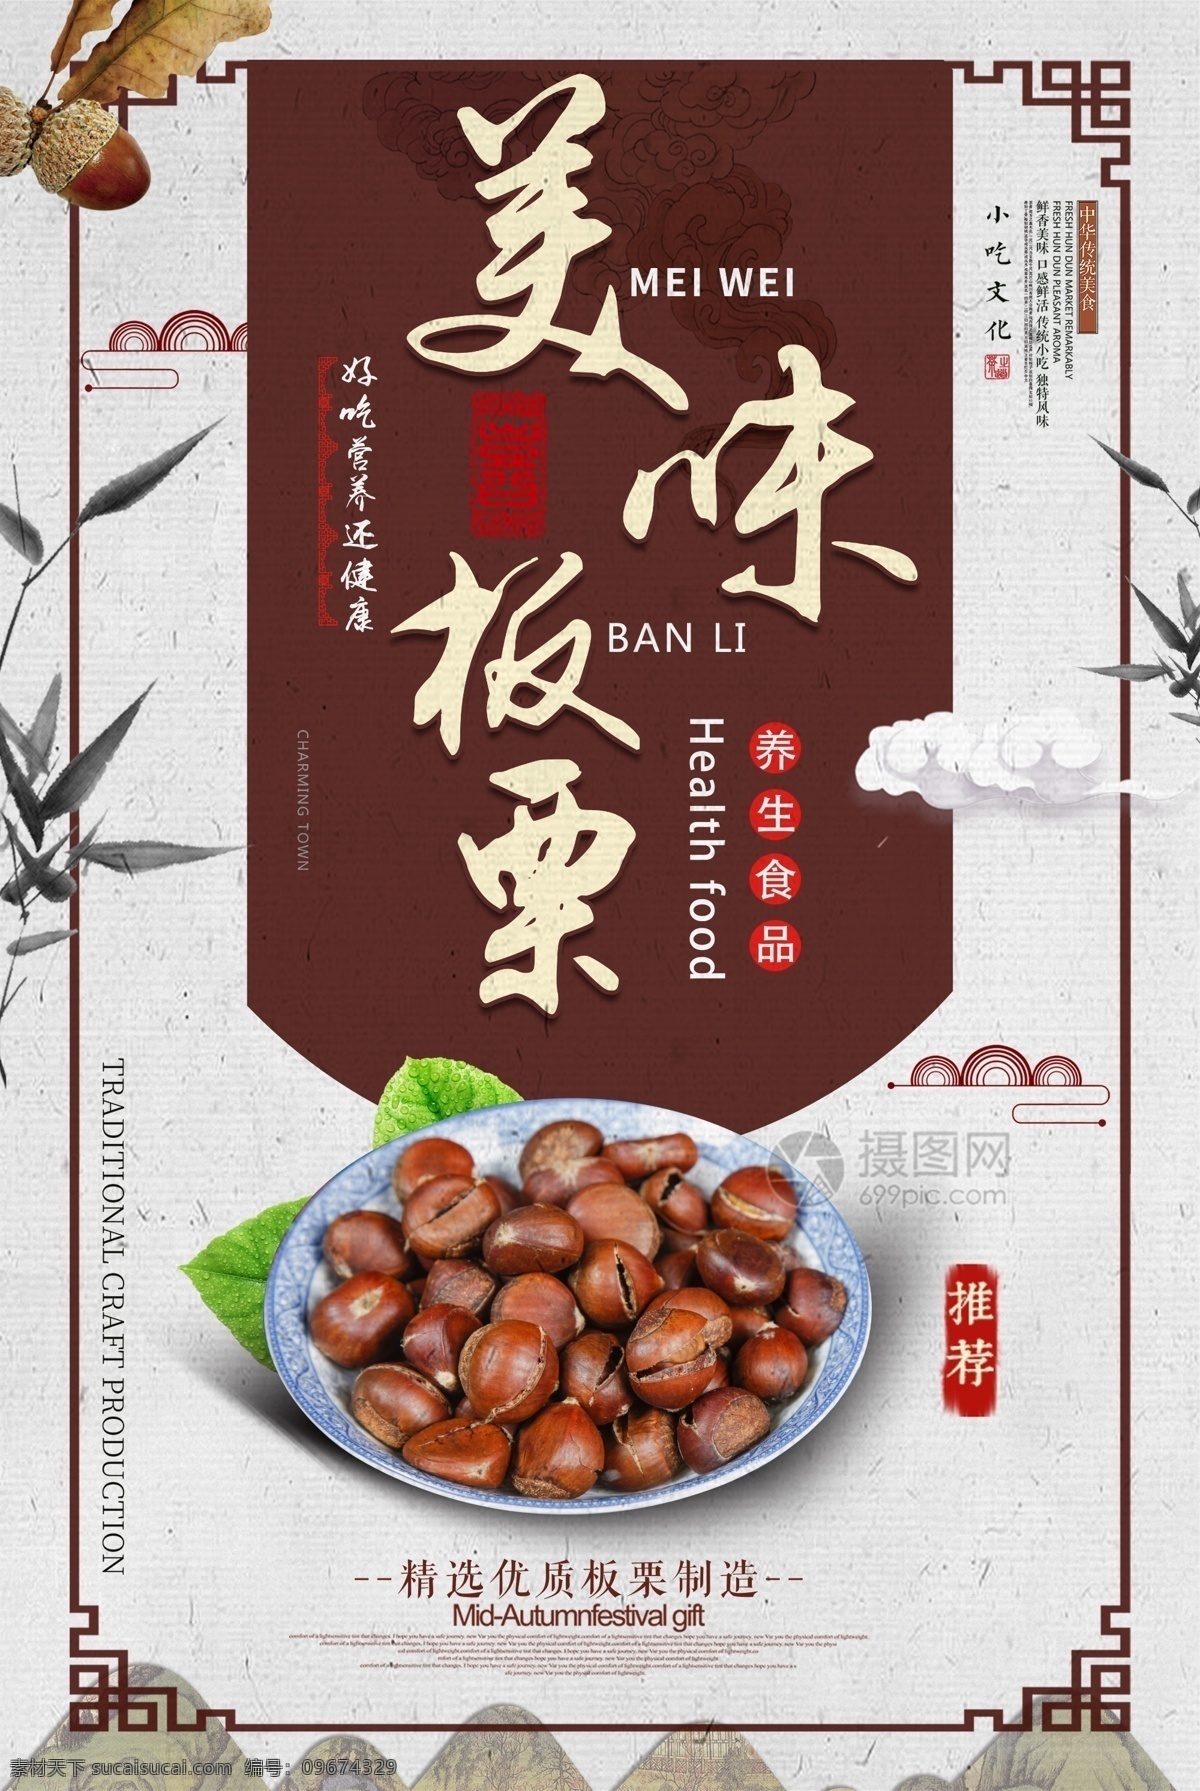 中国 风 美味 板栗 食物 宣传海报 板栗海报 坚果 美食 鲜果 特产 坚果美食海报 农家自产